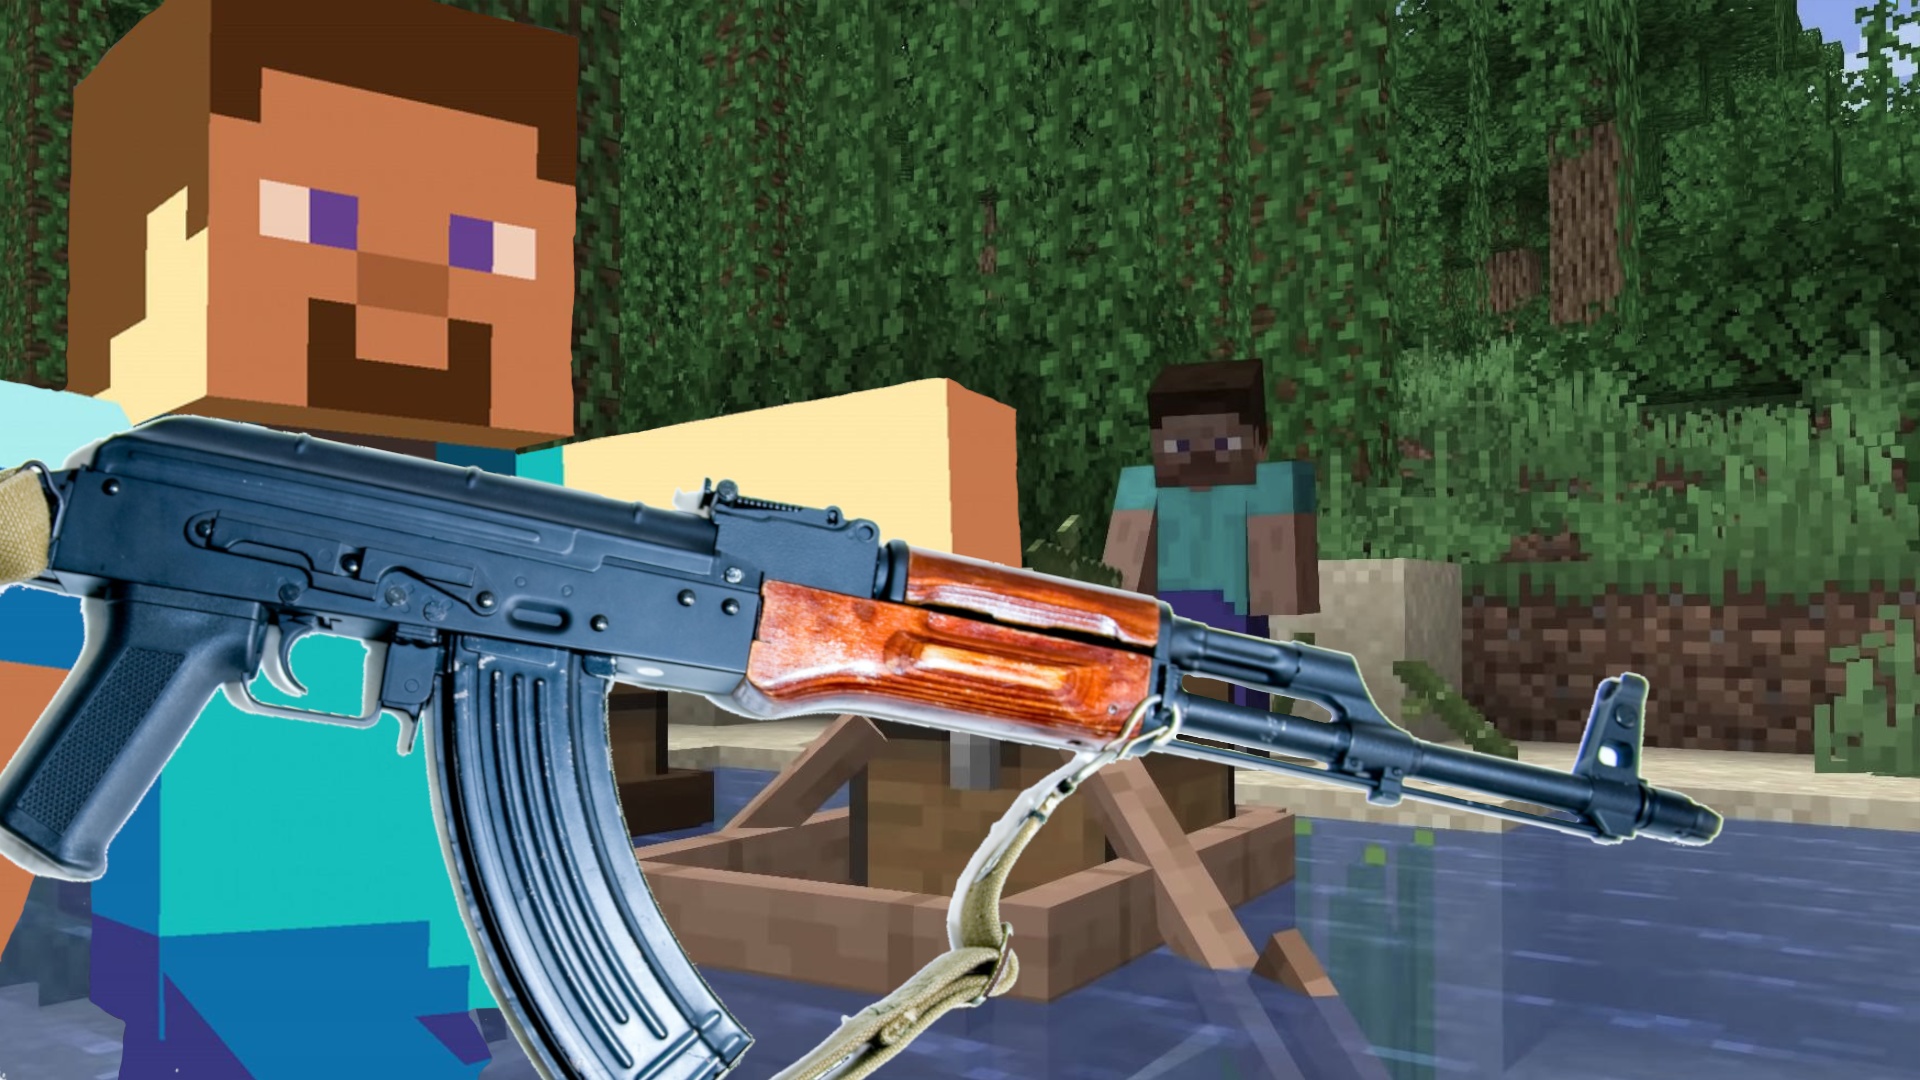 #Minecraft geht gegen echte Schusswaffen auf Custom-Server vor, doch die Community wehrt sich